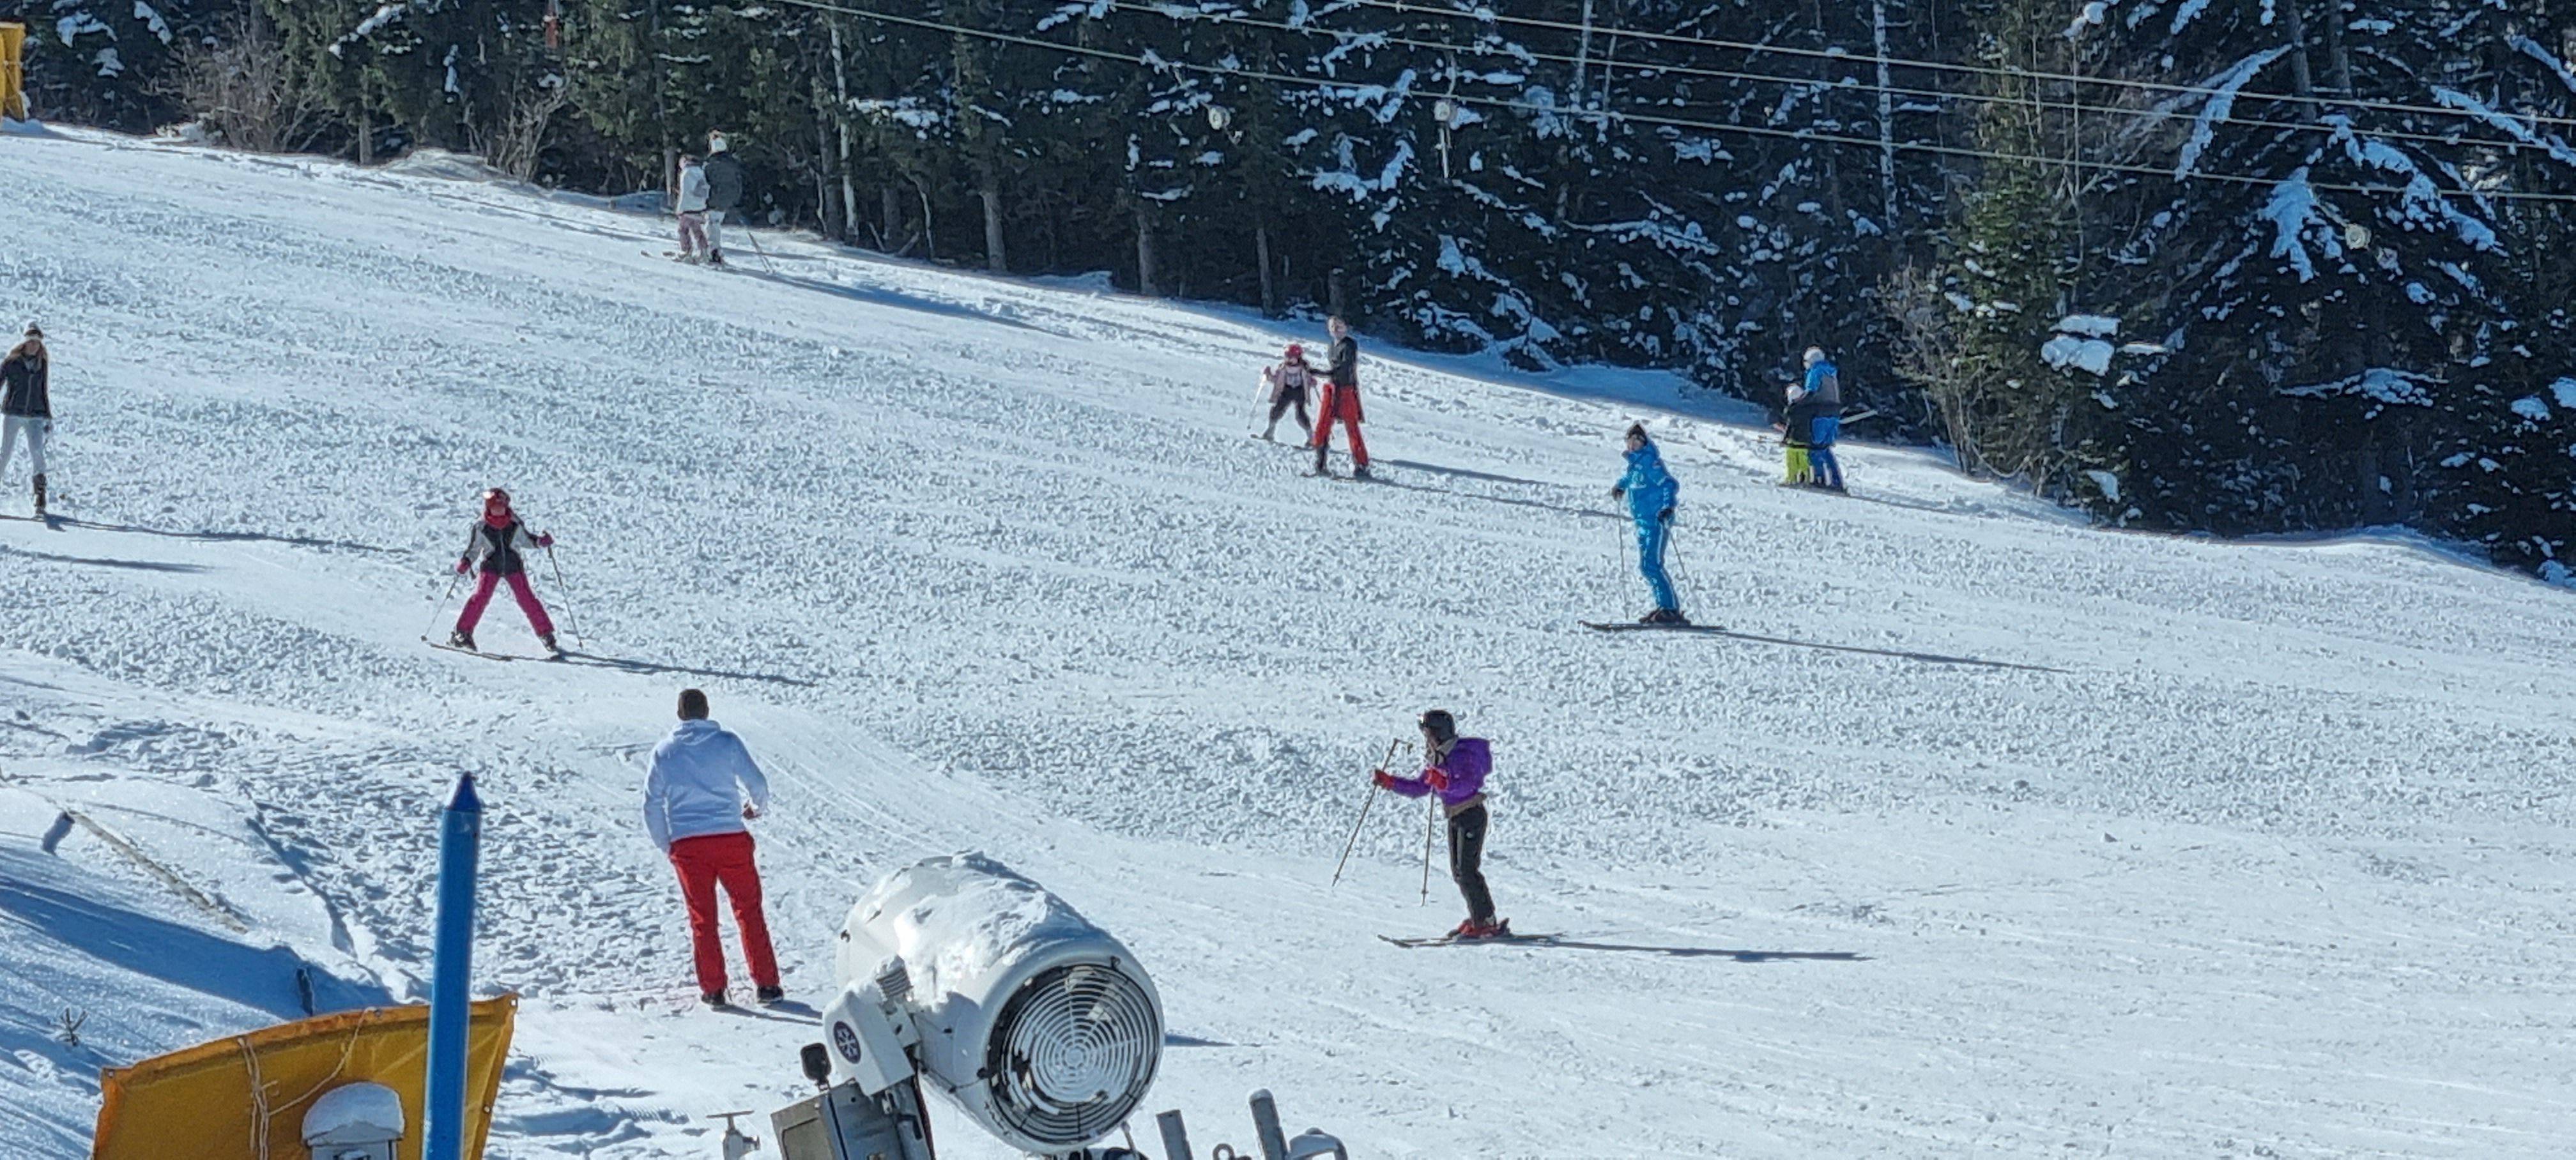 Већи број скијаша очекује се за Сретење